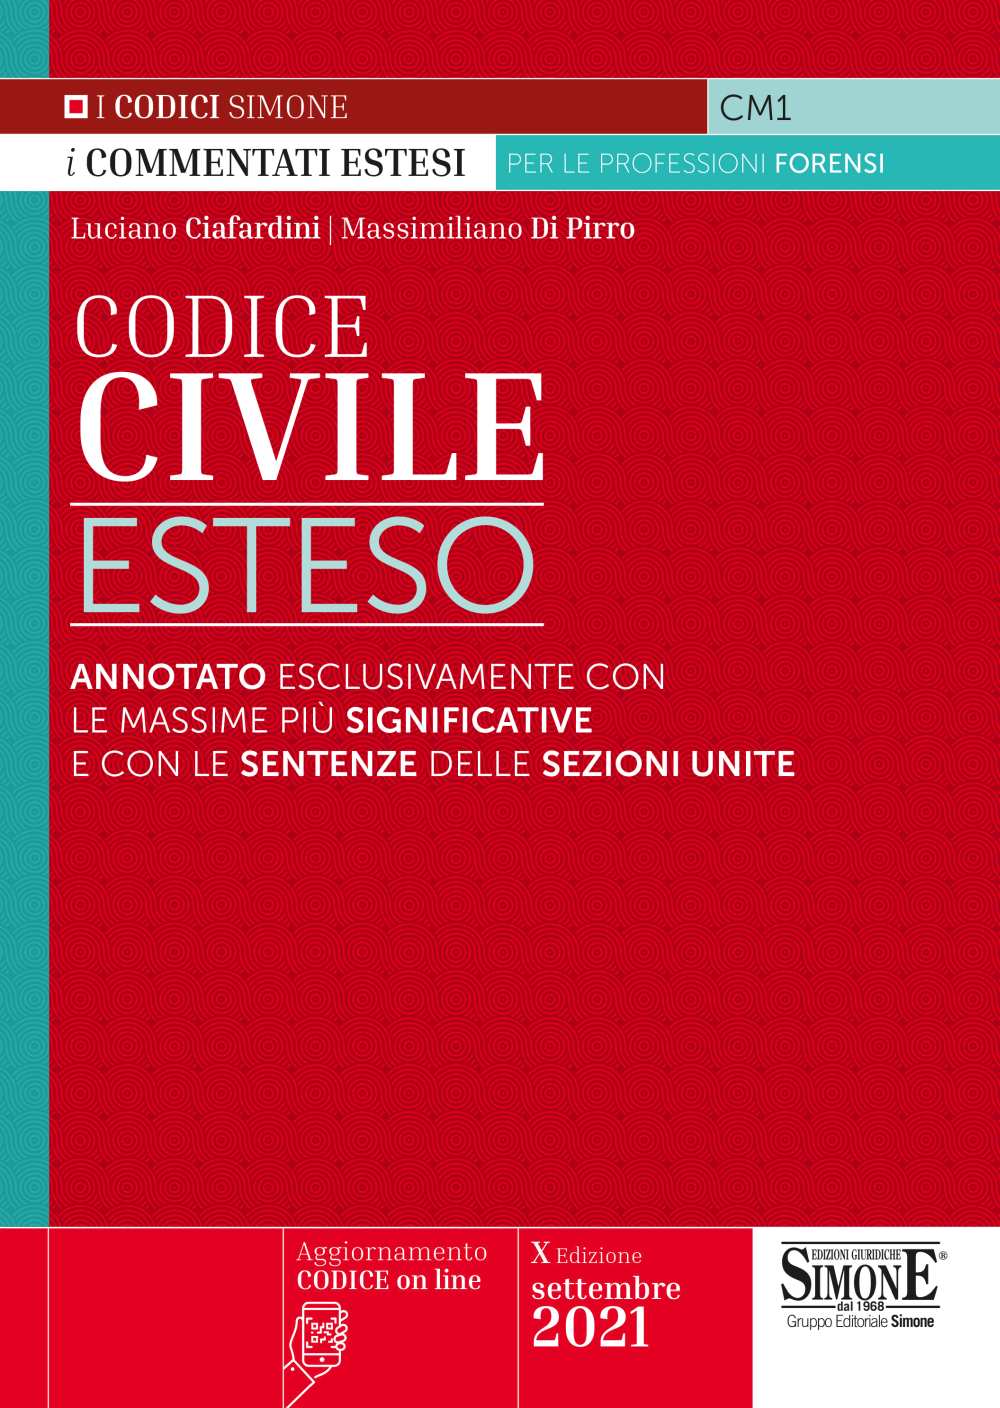 Codice Civile Esteso - CM1